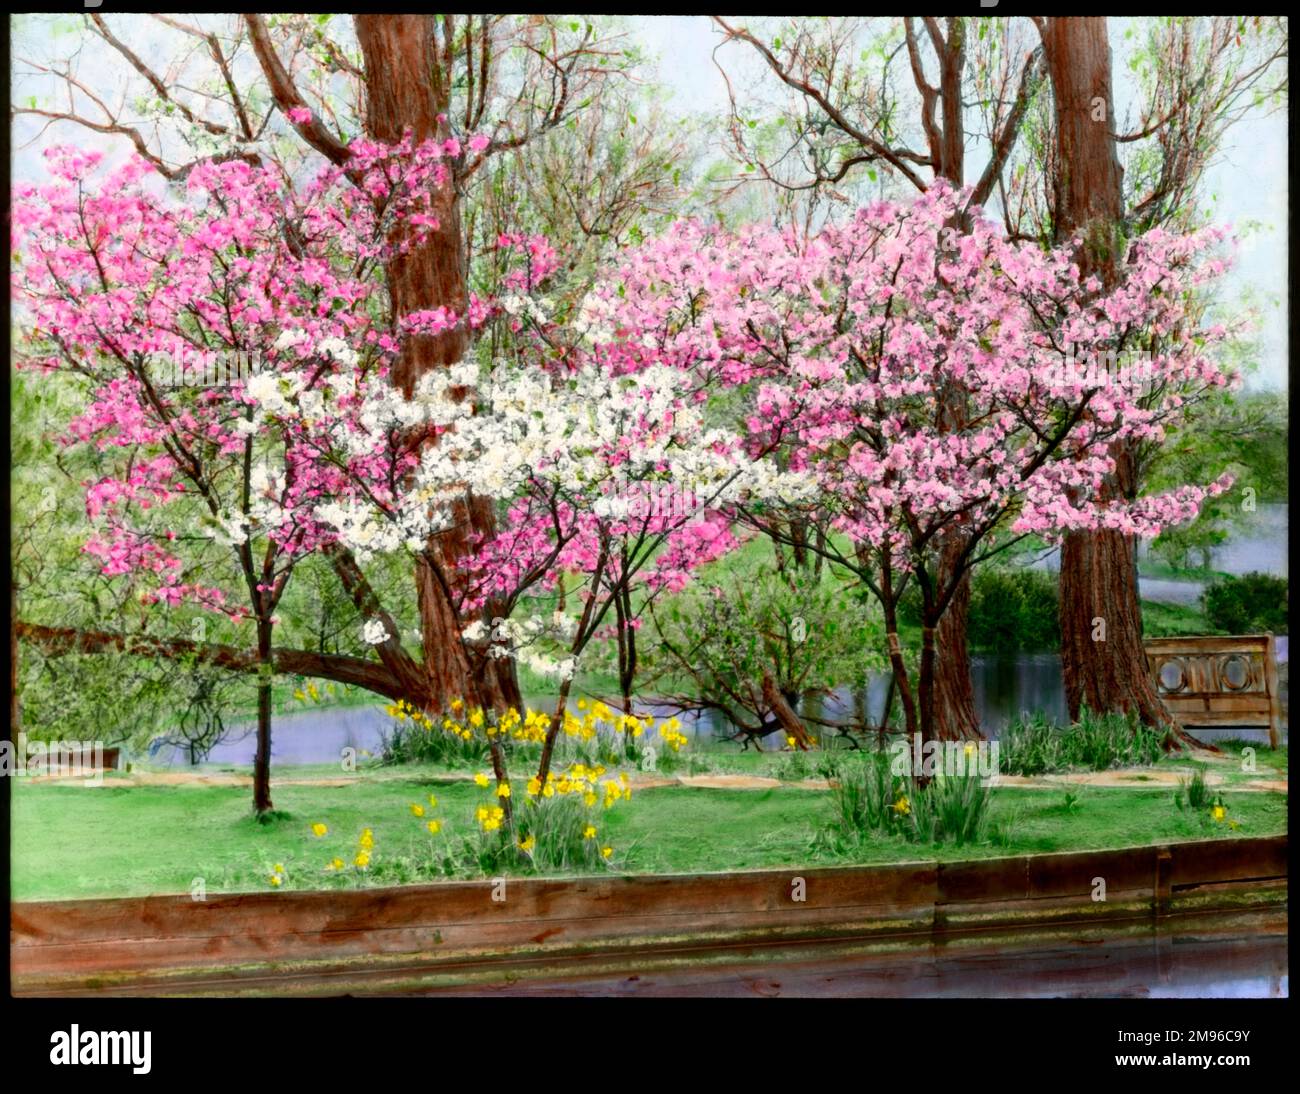 Prunus (cerezo floreciente), varios árboles ornamentales plantados cerca del agua, cargados de flores rosadas y blancas. Los narcisos están creciendo en sus raíces. Foto de stock